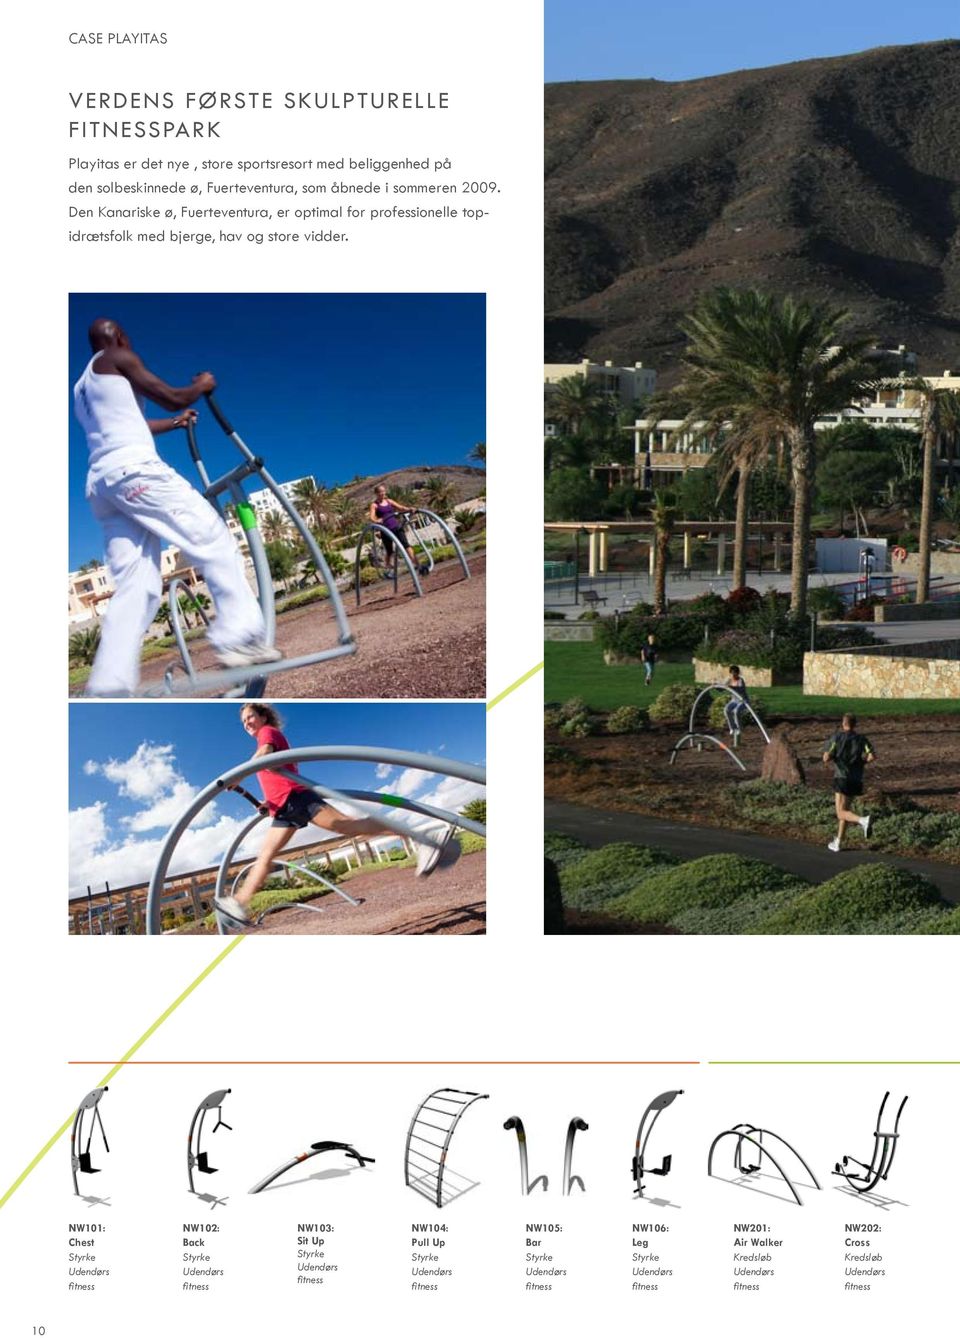 Den Kanariske ø, Fuerteventura, er optimal for professionelle topidrætsfolk med bjerge, hav og store vidder.